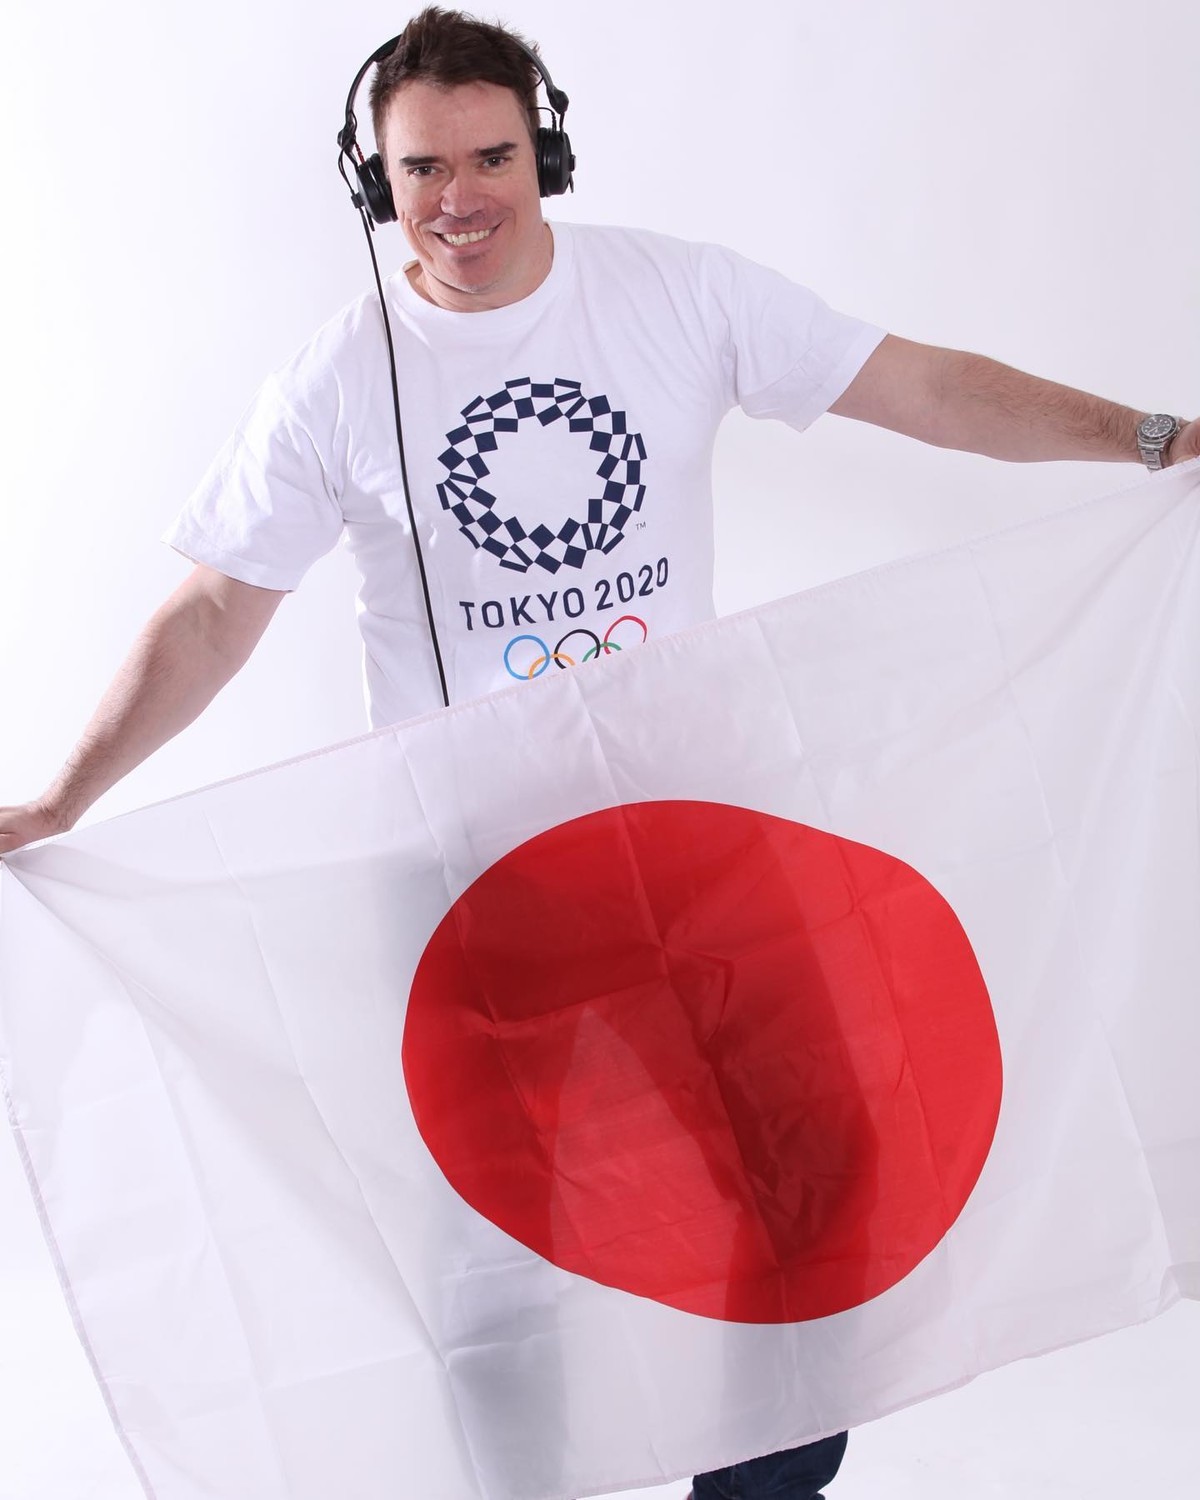 Batom de cereja' em Tóquio: conheça o DJ que toca hits brasileiros em jogos  de vôlei nas Olimpíadas, Pop & Arte